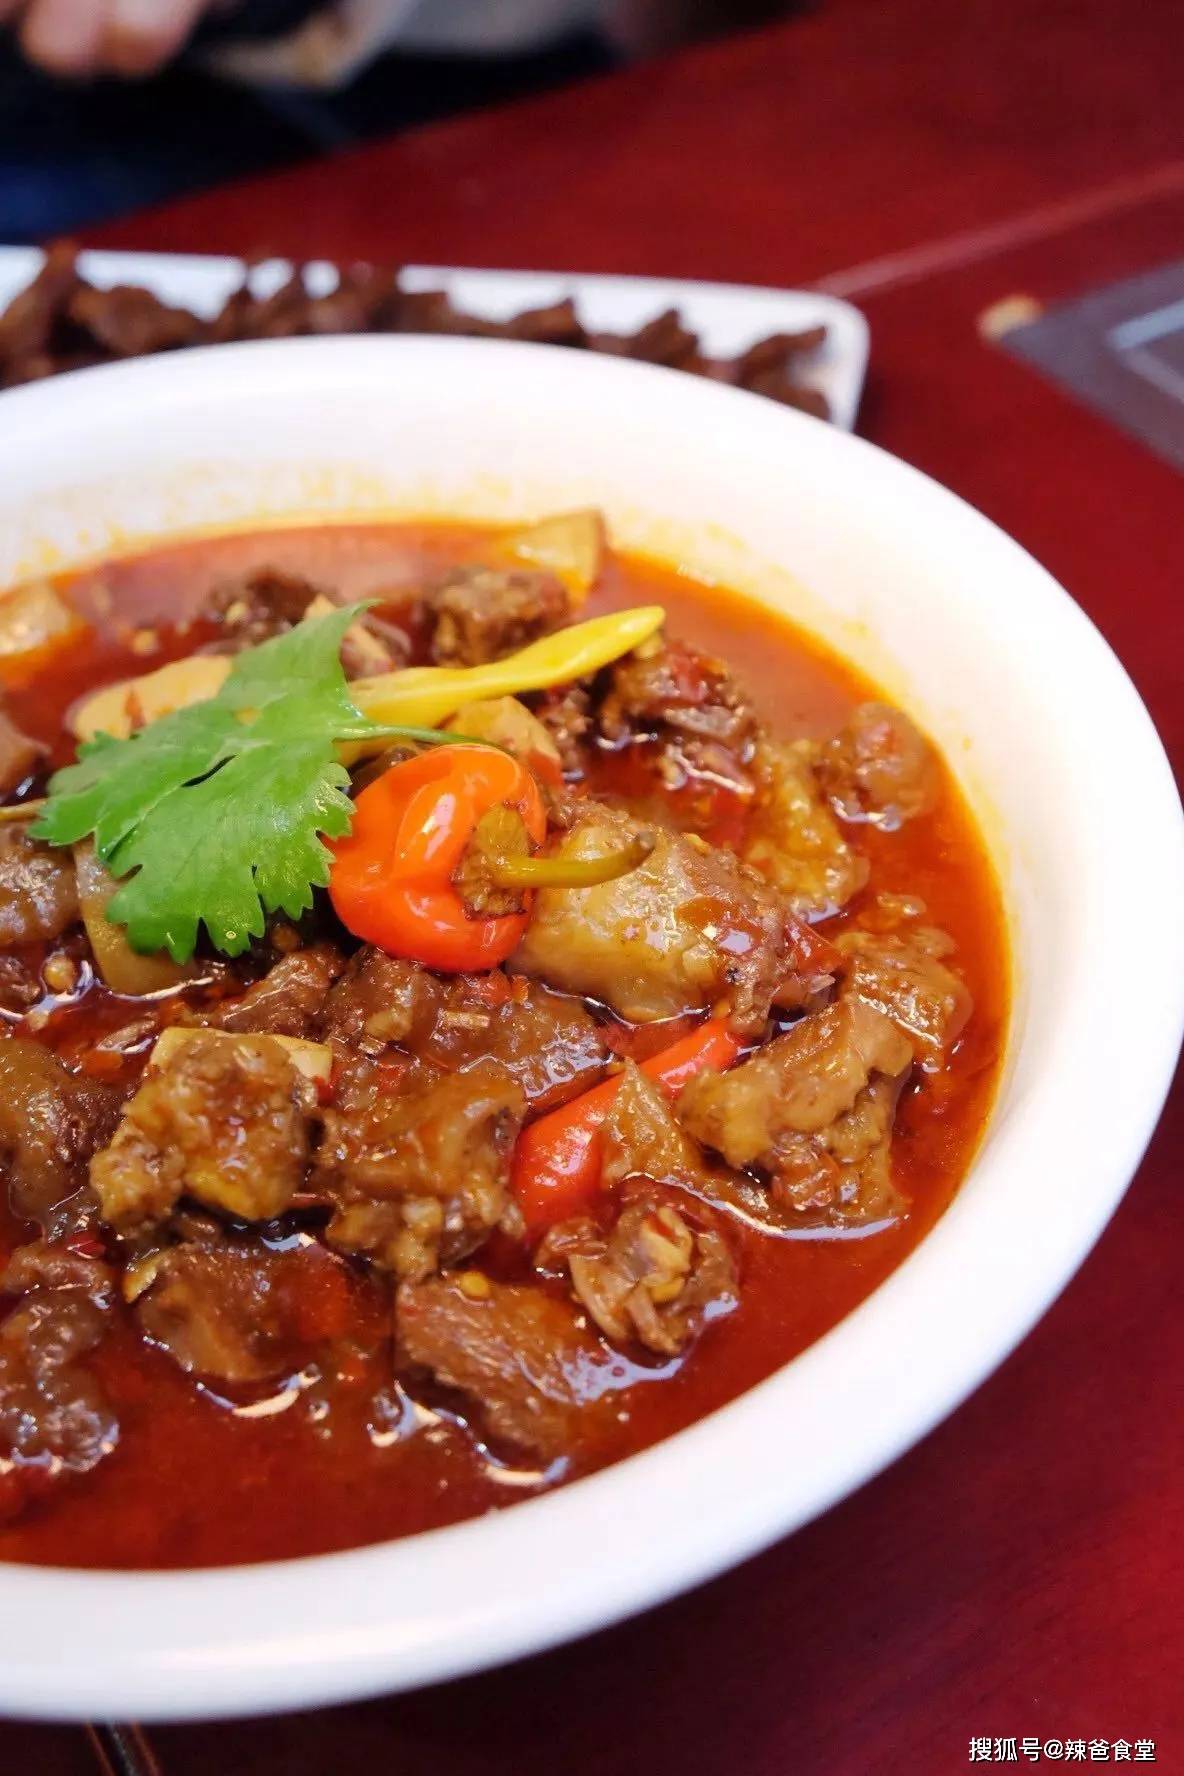 黄焖牛肉在鄂菜中是非常常见的经典家常菜